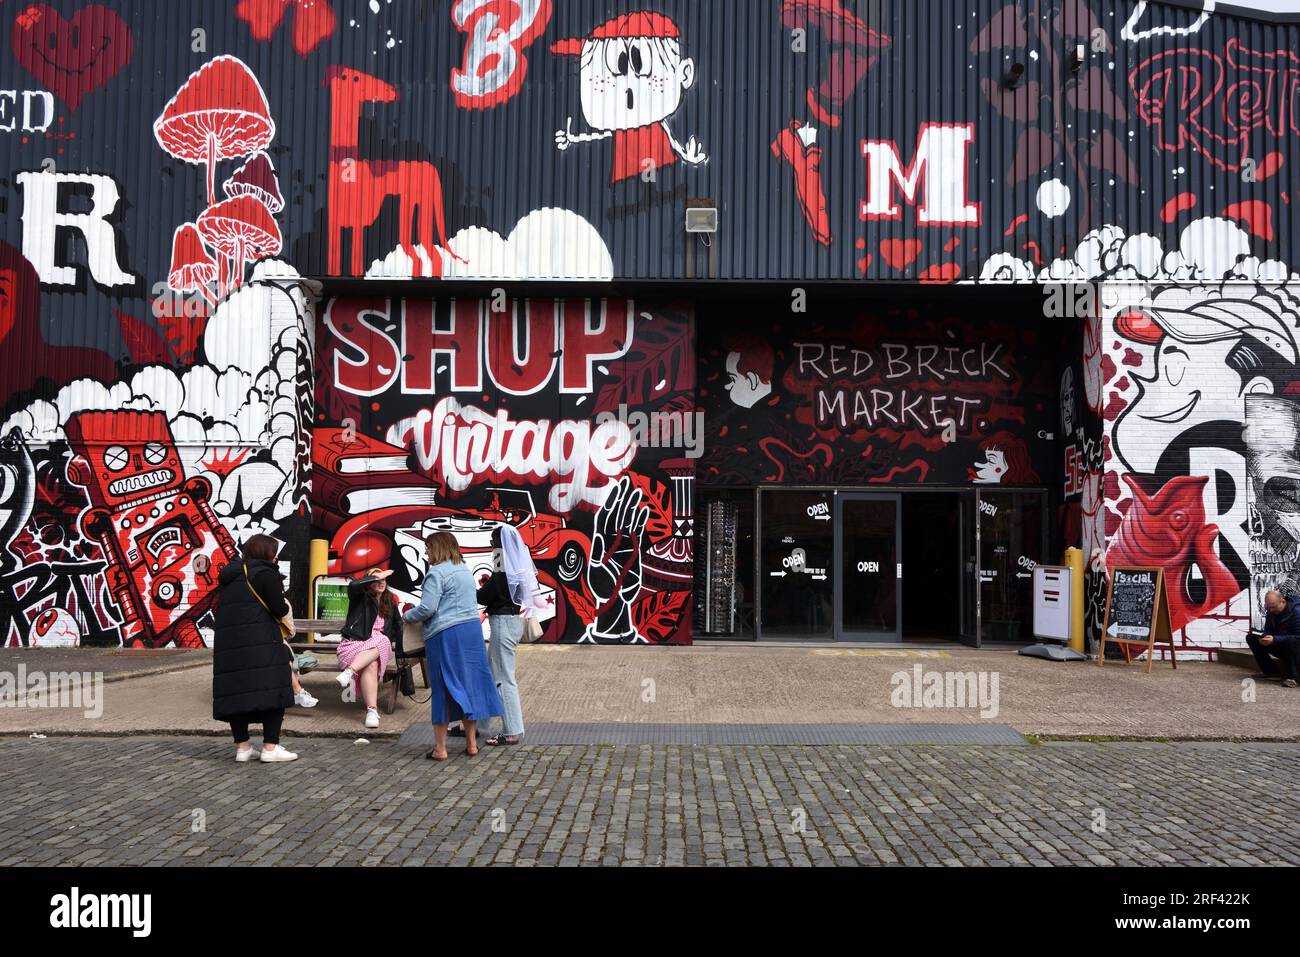 Acheteurs ou touristes devant l'entrée de Red Brick Market, Covered Market ou Vintage Shop Liverpool Angleterre Banque D'Images